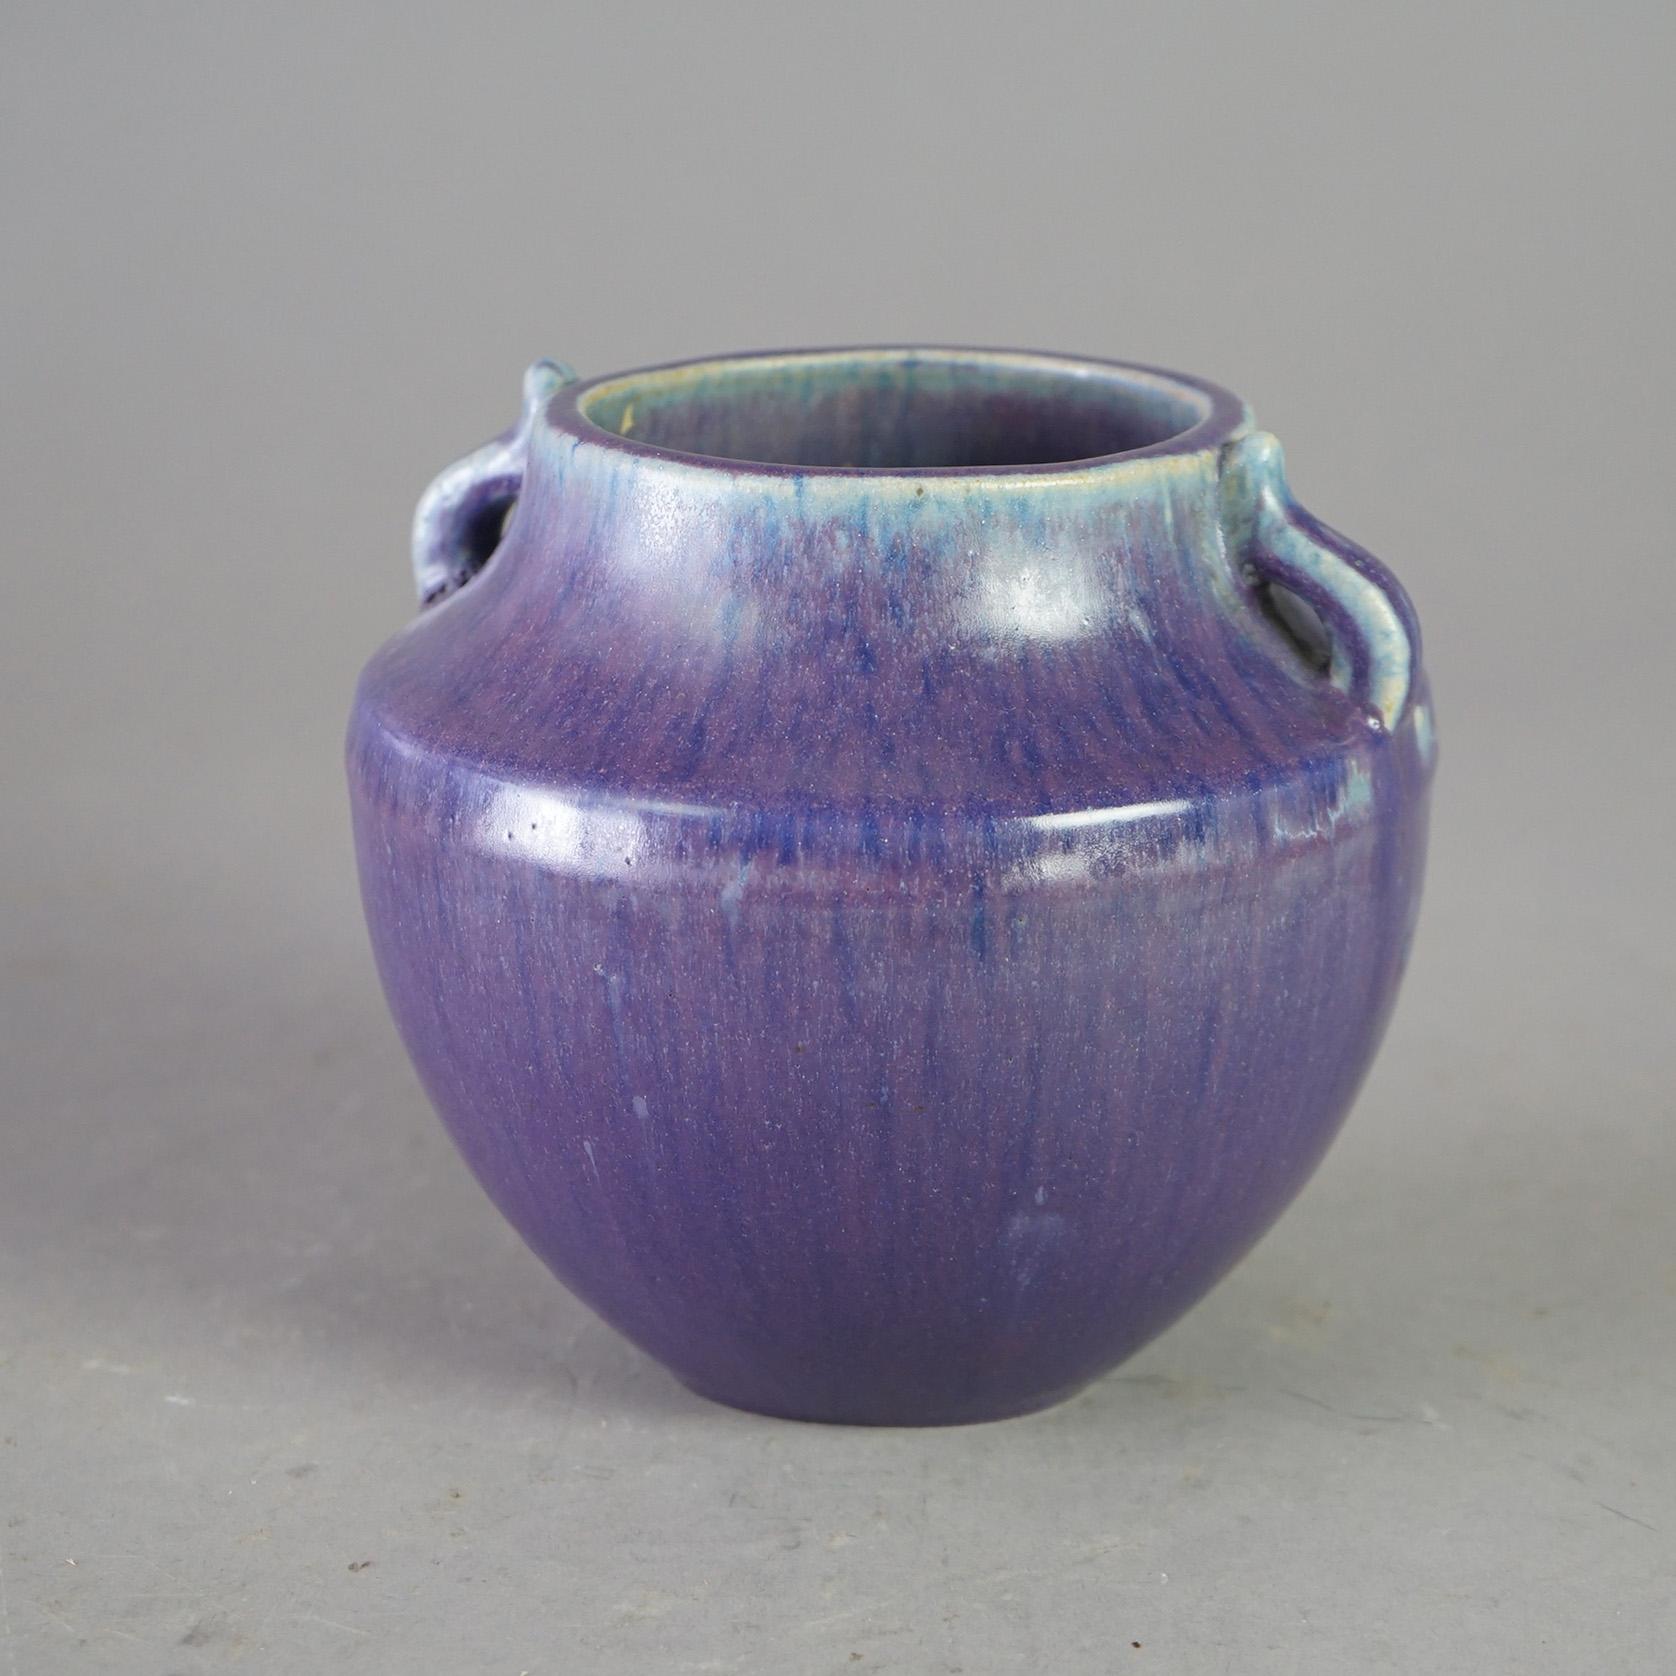 Un vase antique par Fulper offre une construction de poterie d'art avec des poignées doubles, un glaçage et une marque de fabricant sur la base comme photographié, c1920.

Mesures - 6 